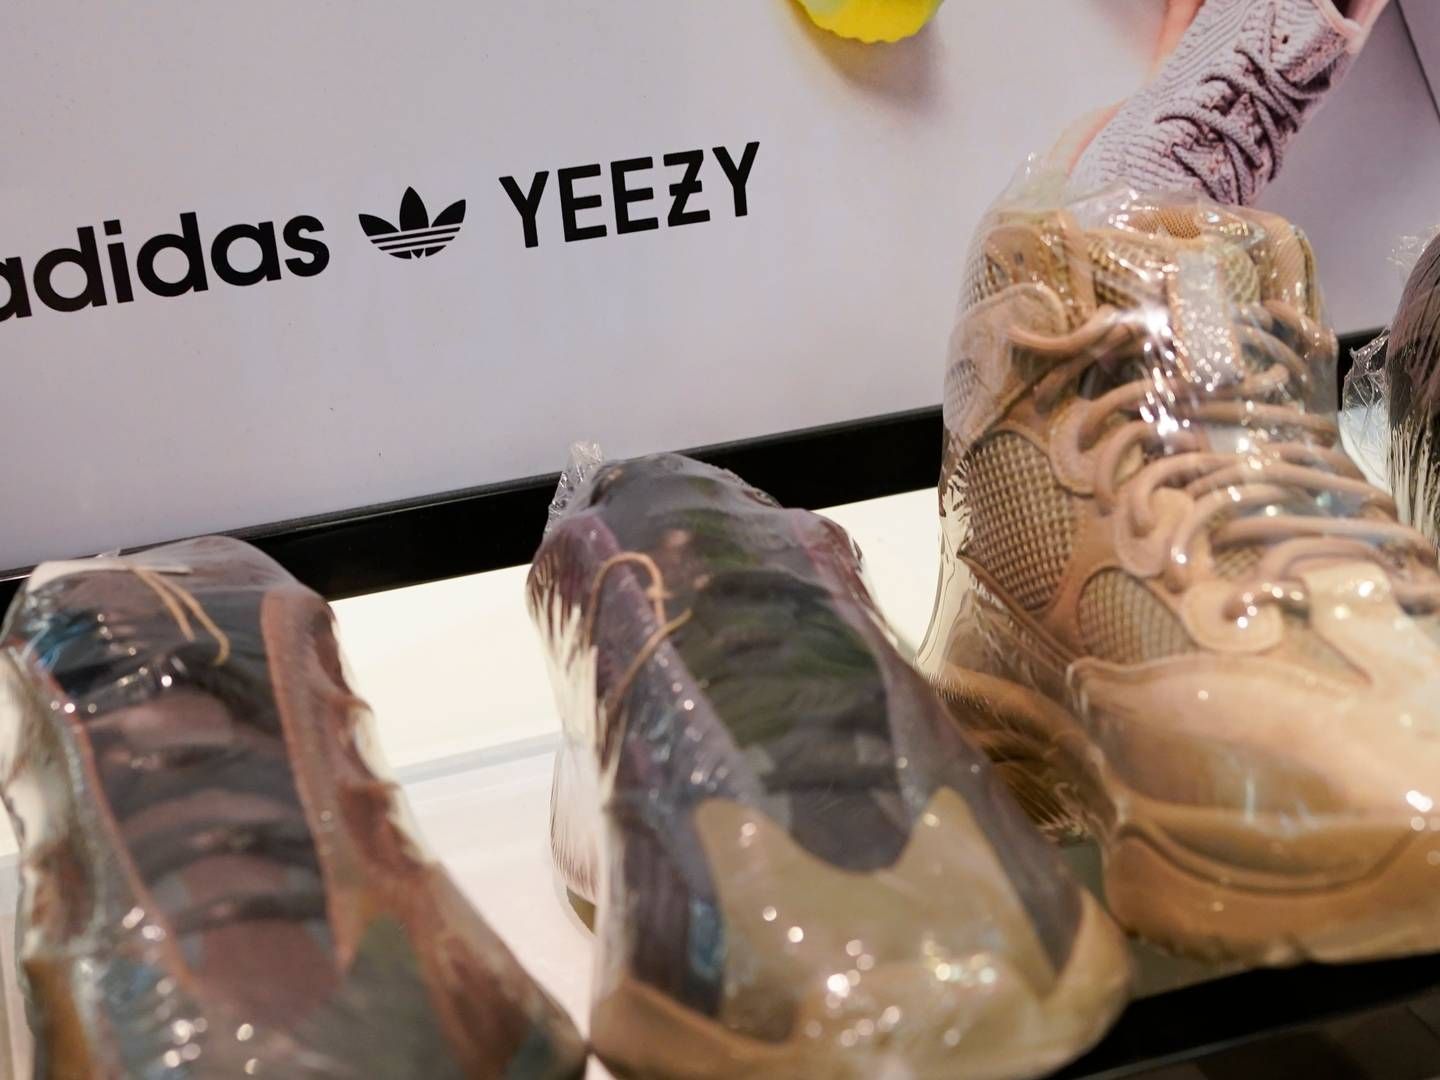 Styrke Cirkel Nogle gange nogle gange Adidas planlægger endnu et udsalg af Yeezy-sko — DetailWatch